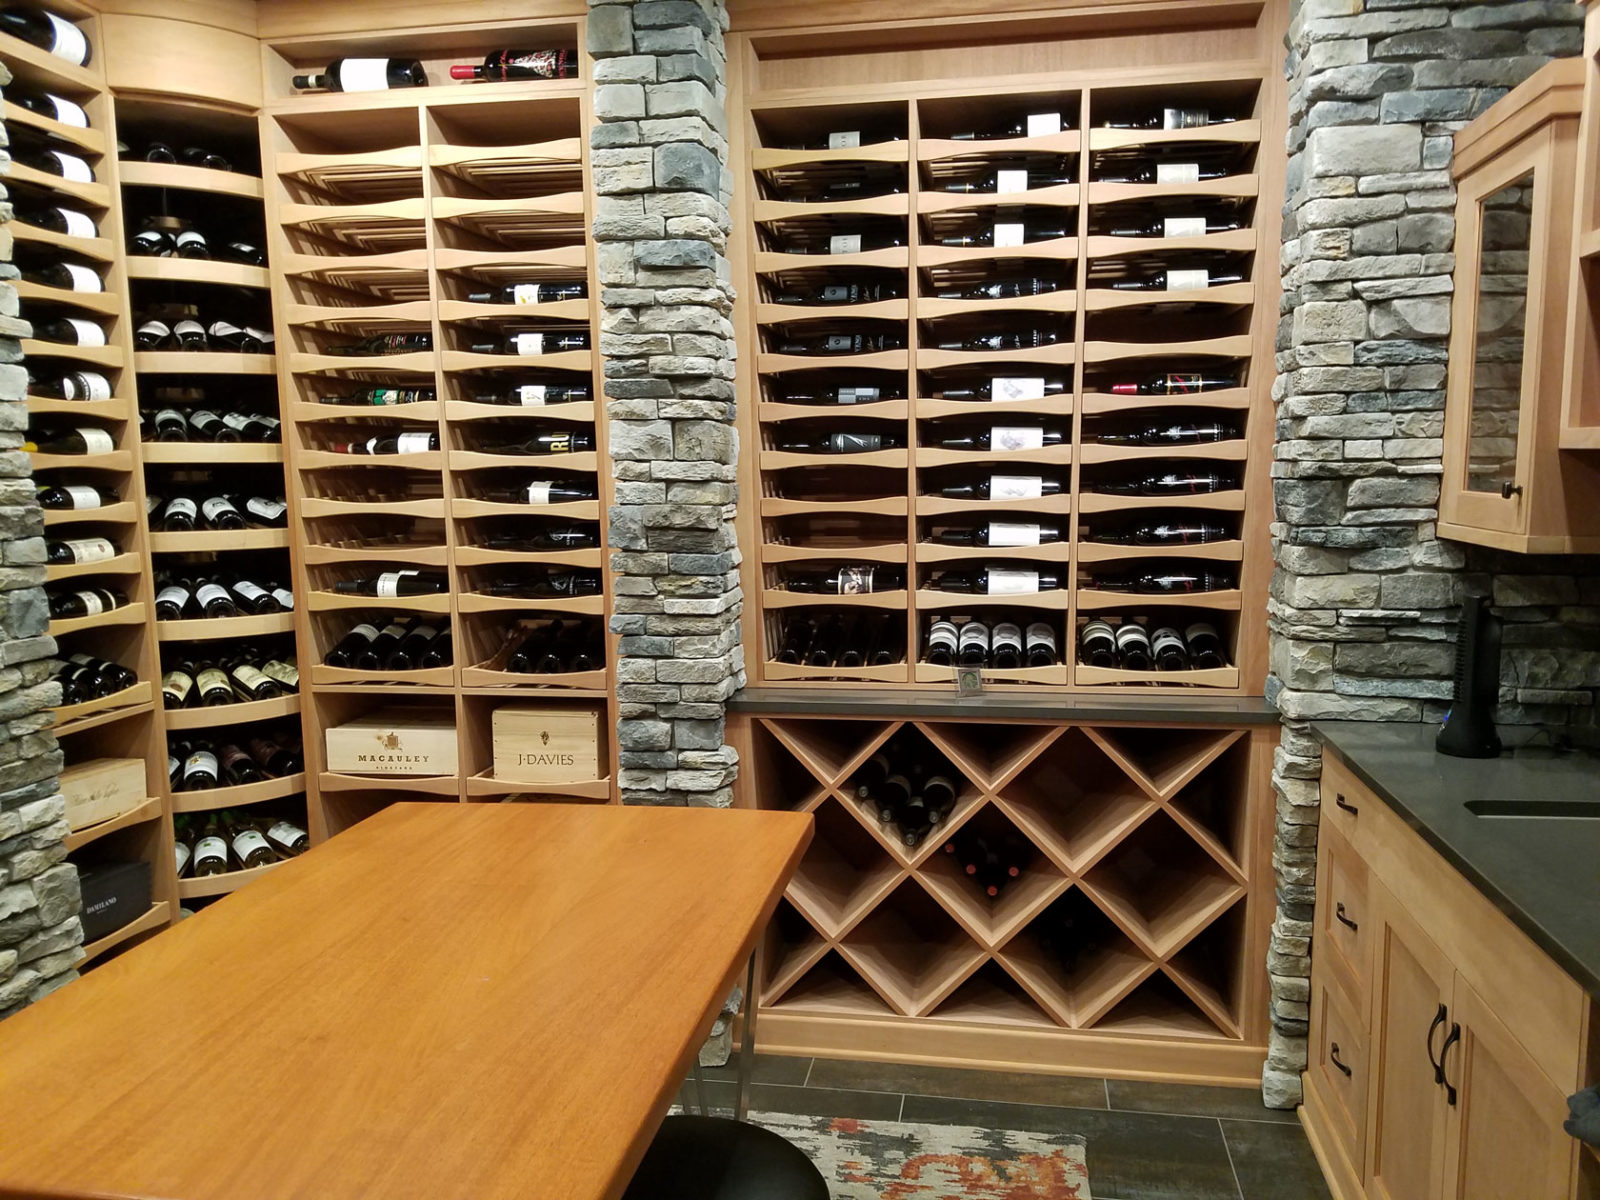 Mahogany Wine Racks with Stone Walls